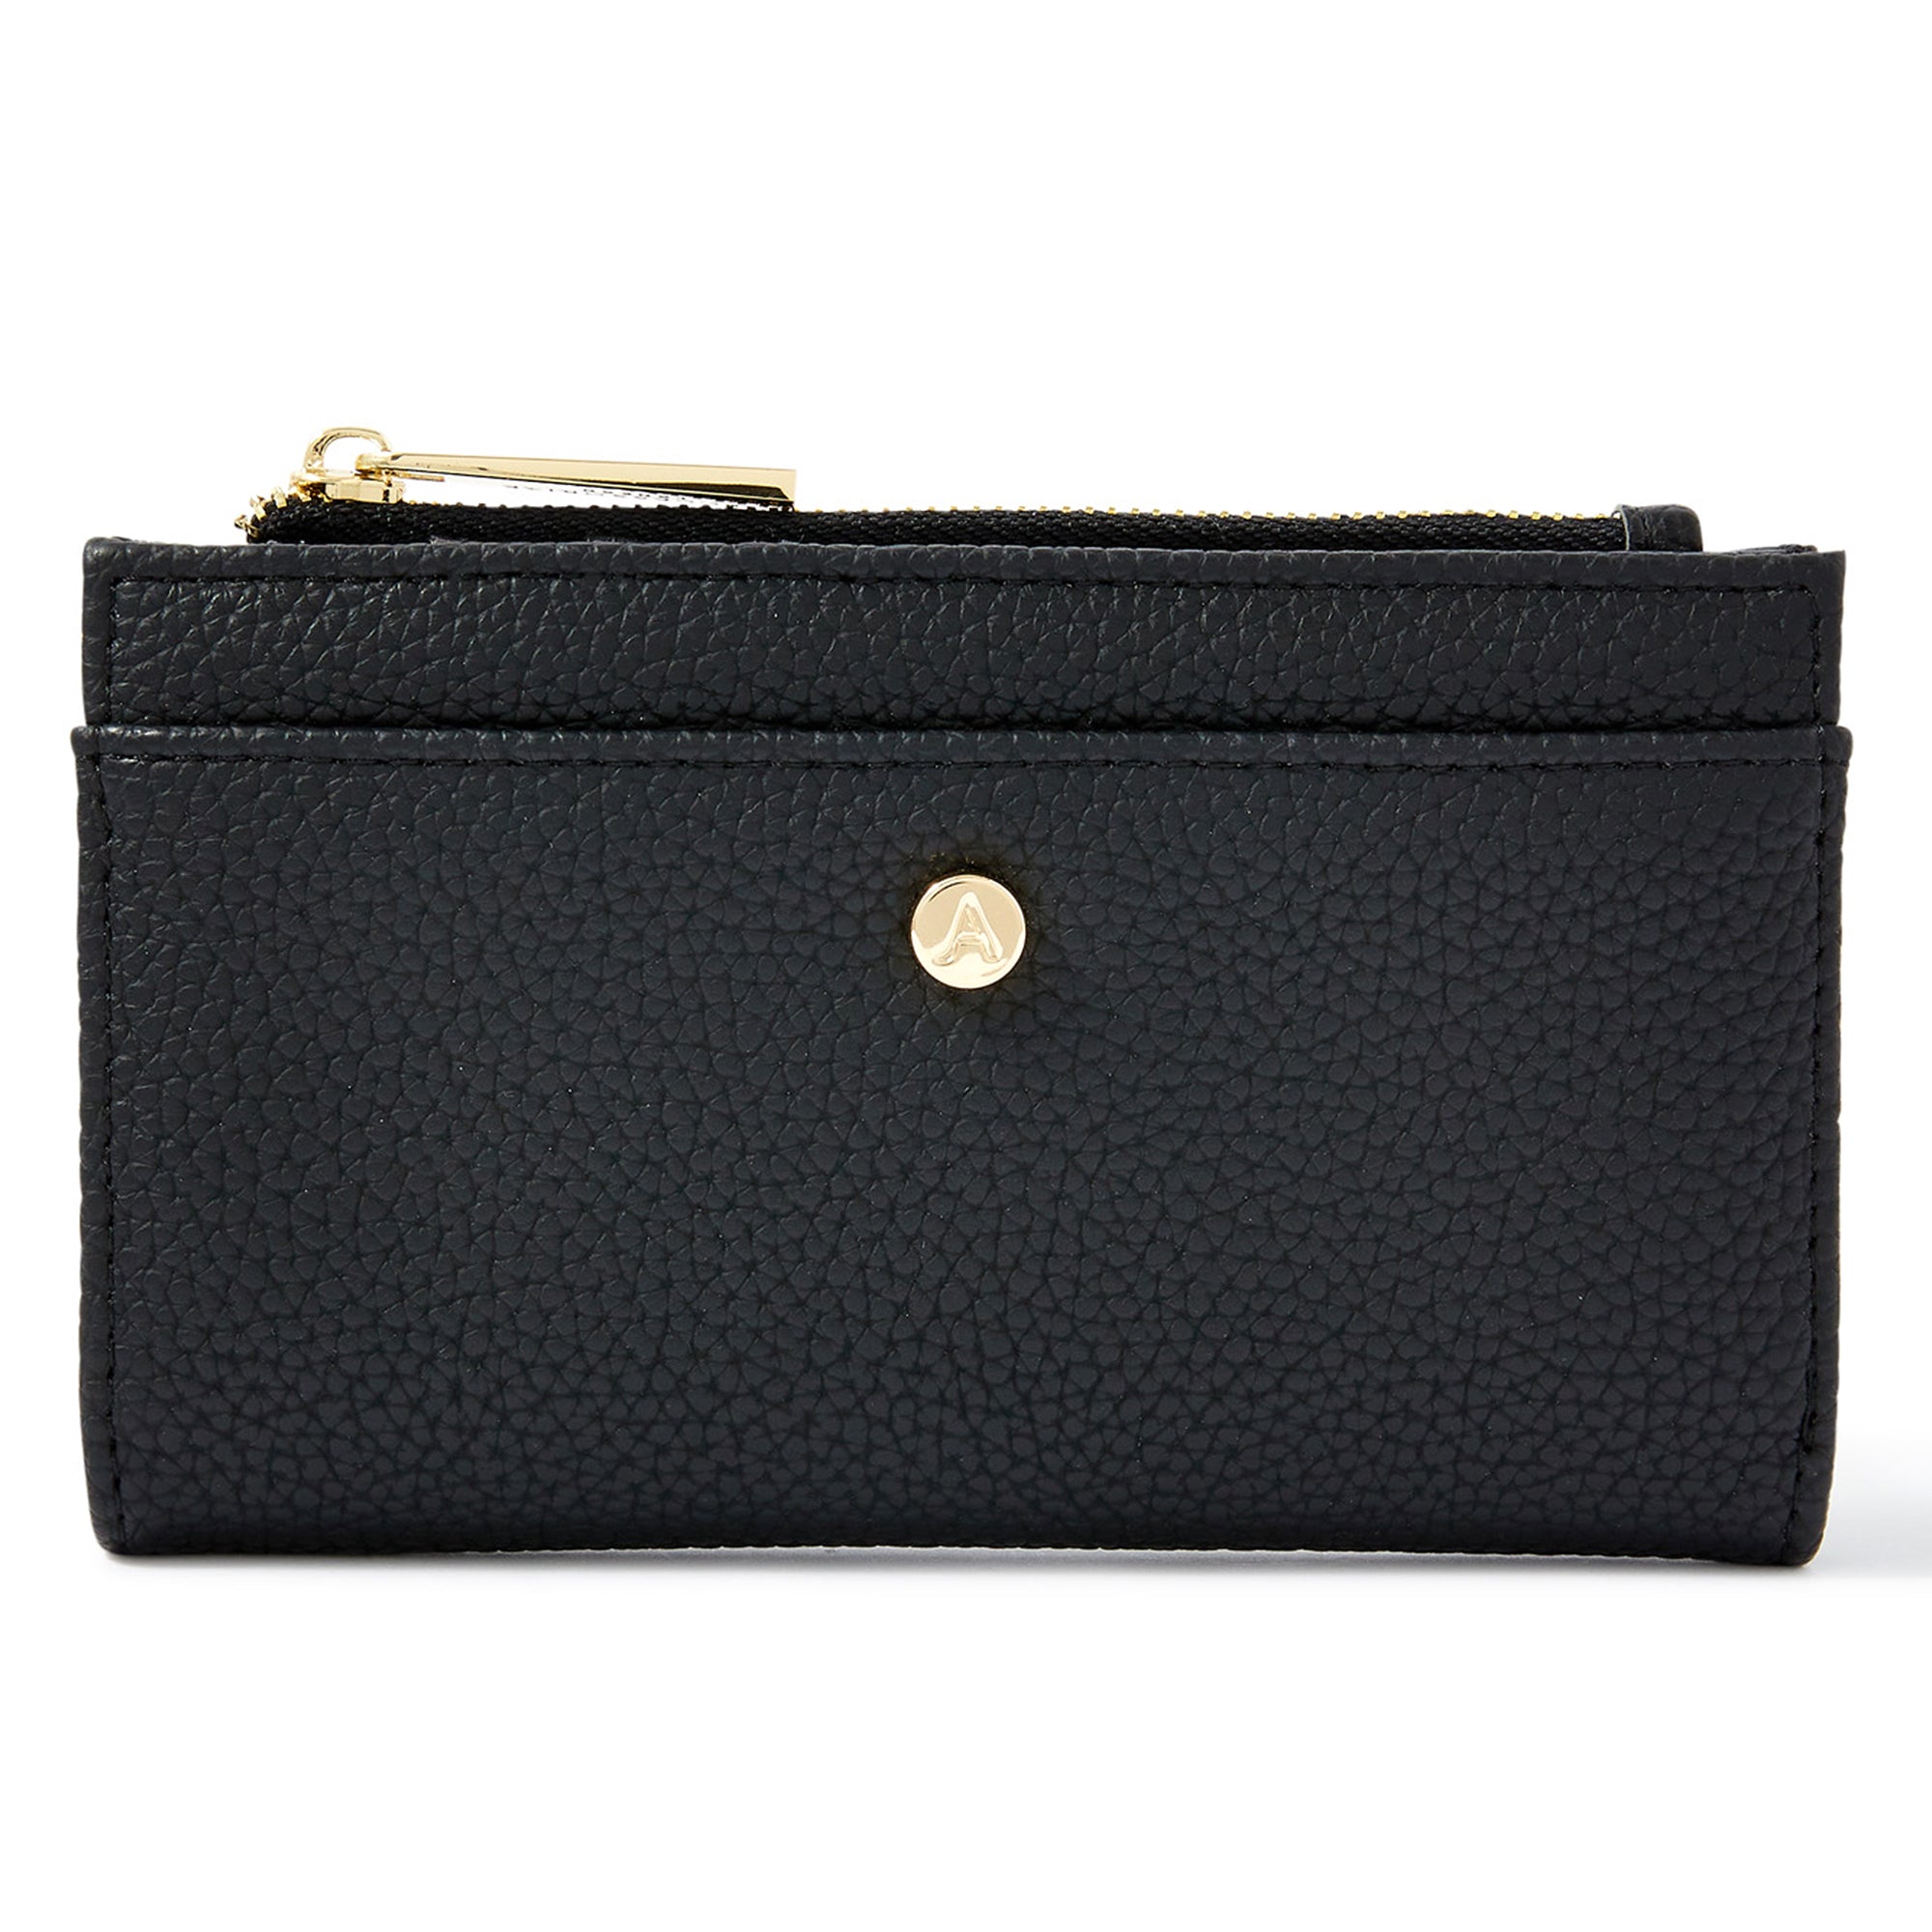 Accessorize London Women's Faux Leather Black Medium Slimline Wallet